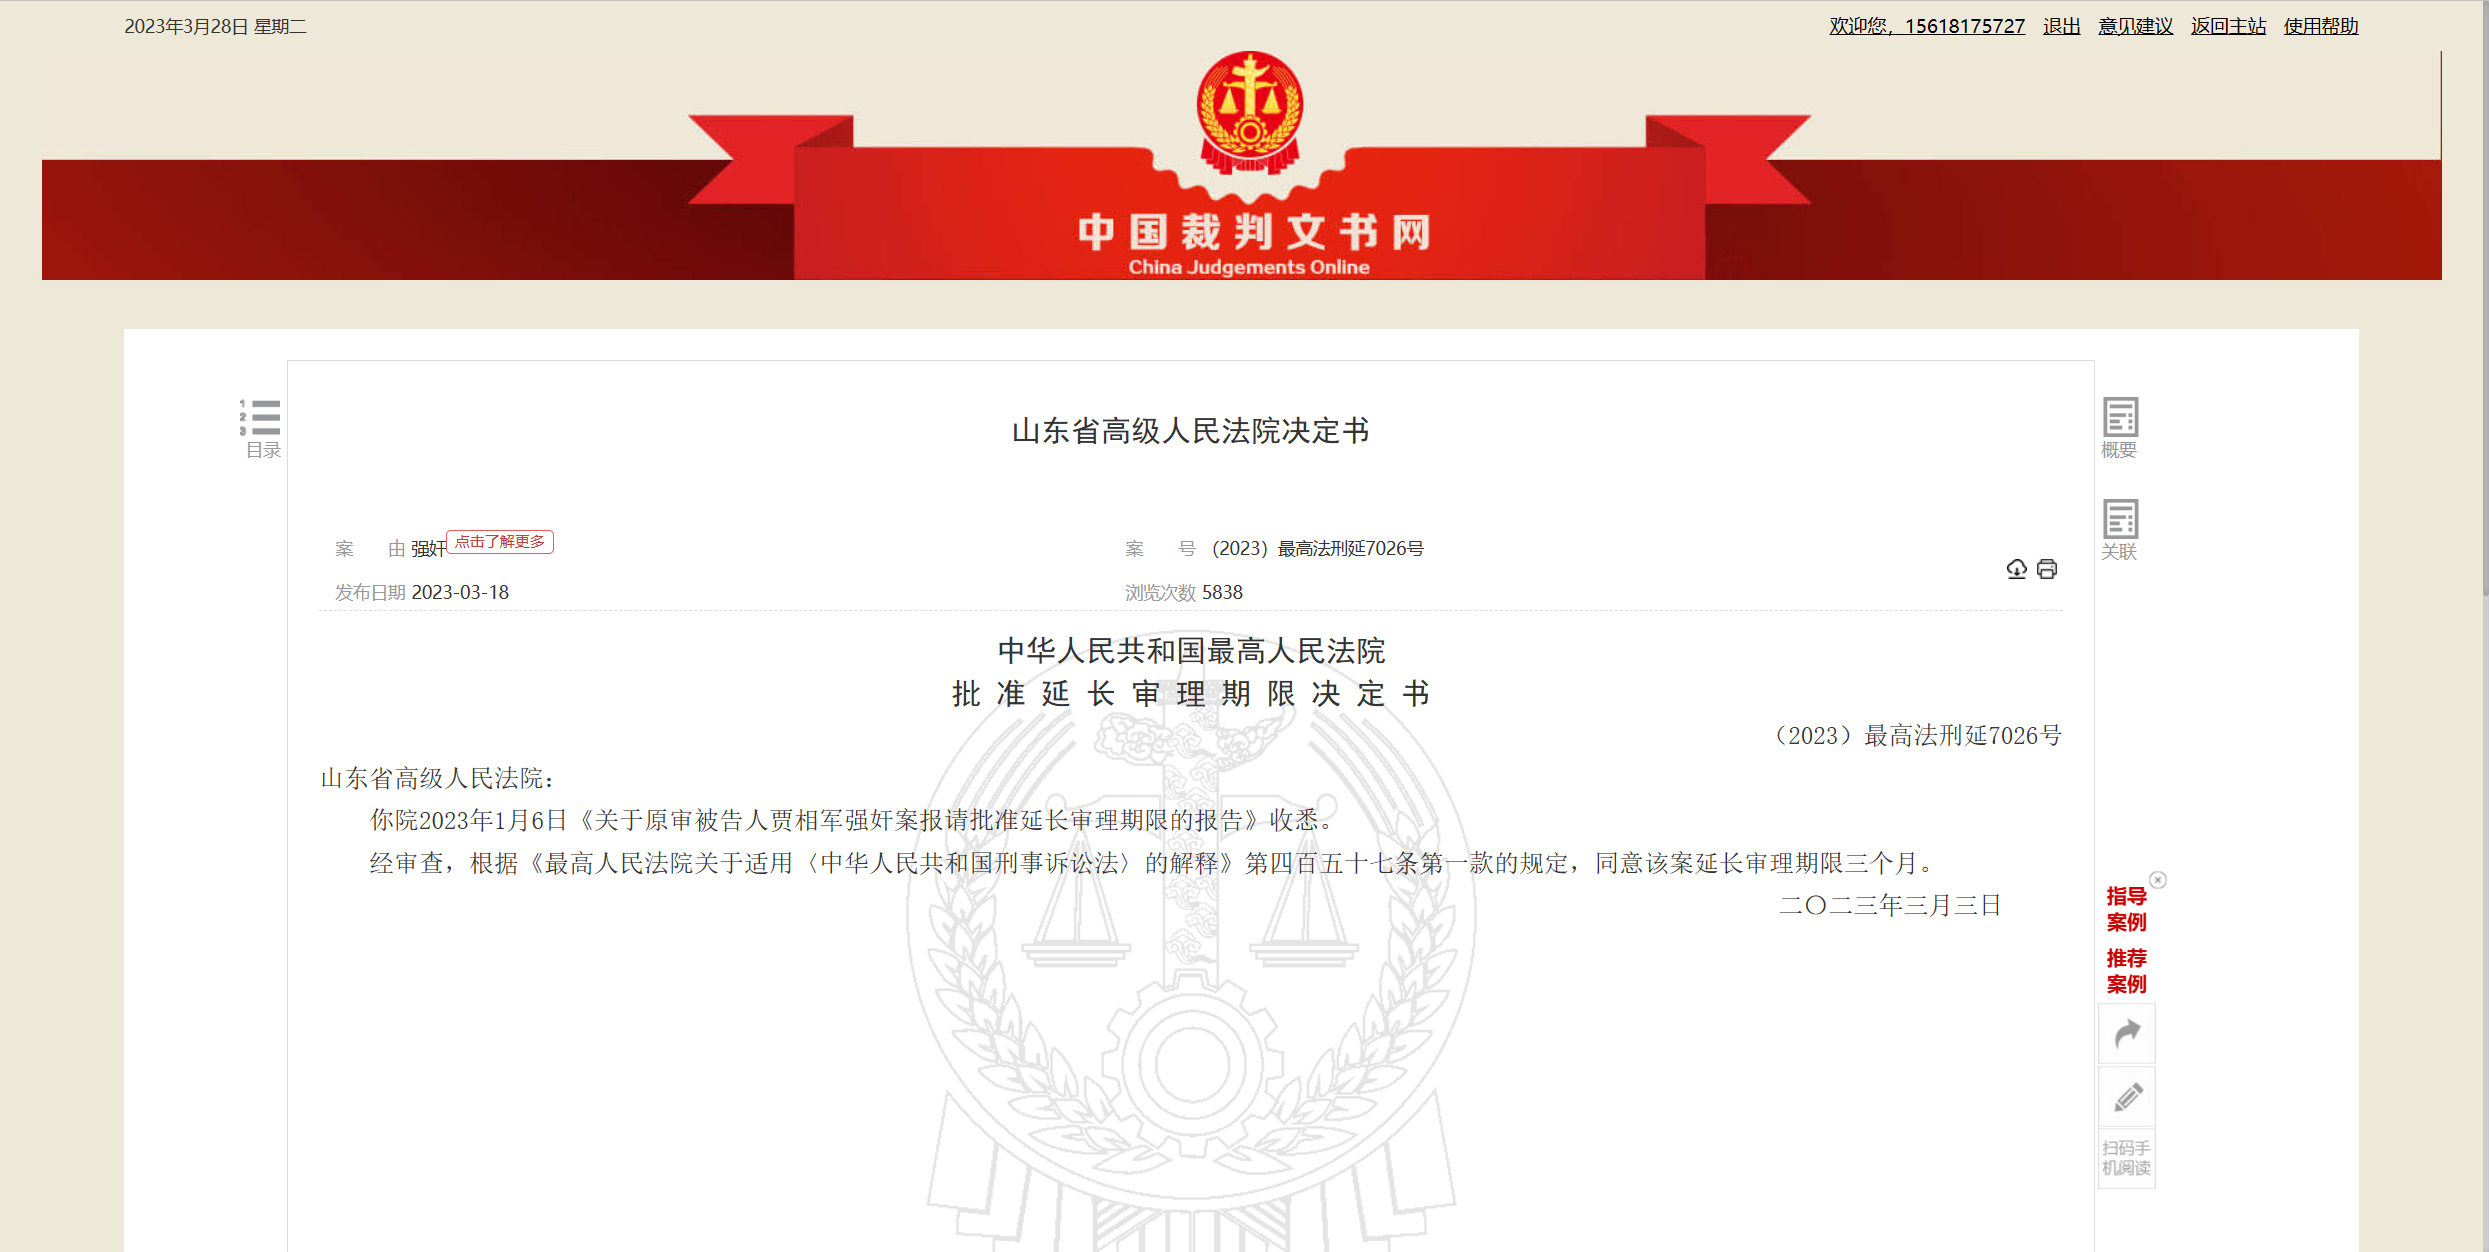 裁判文書網公佈延長審理期限決定書  中國裁判文書網 截圖